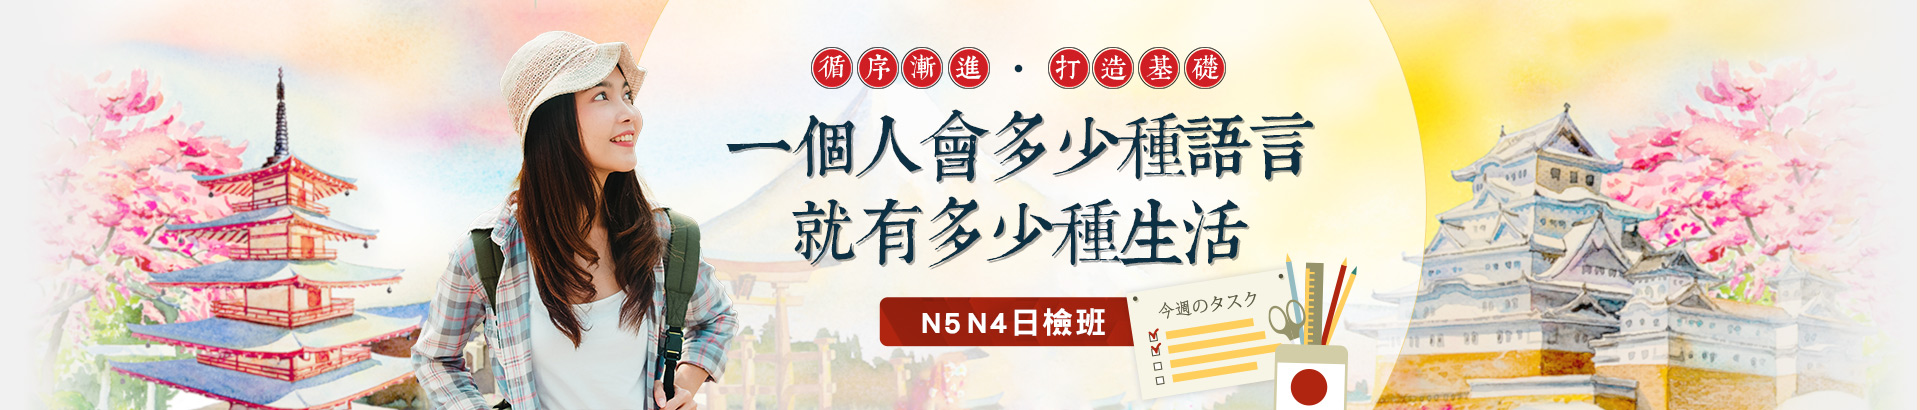 N5N4日語課程介紹